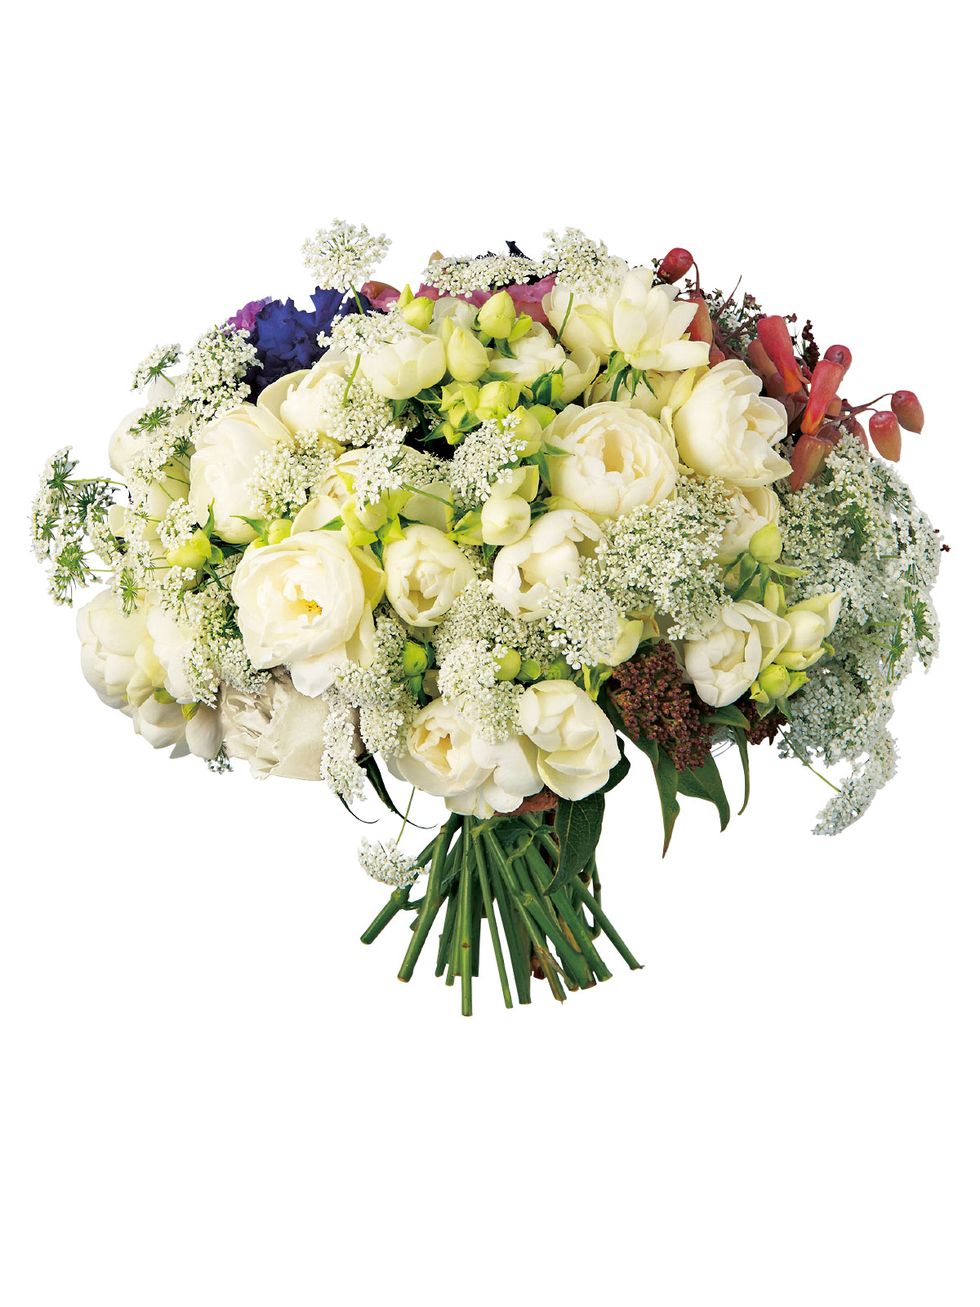 Flower, Bouquet, Cut flowers, Plant, Floristry, Flower Arranging, White, Flowering plant, Rose, Floral design, 